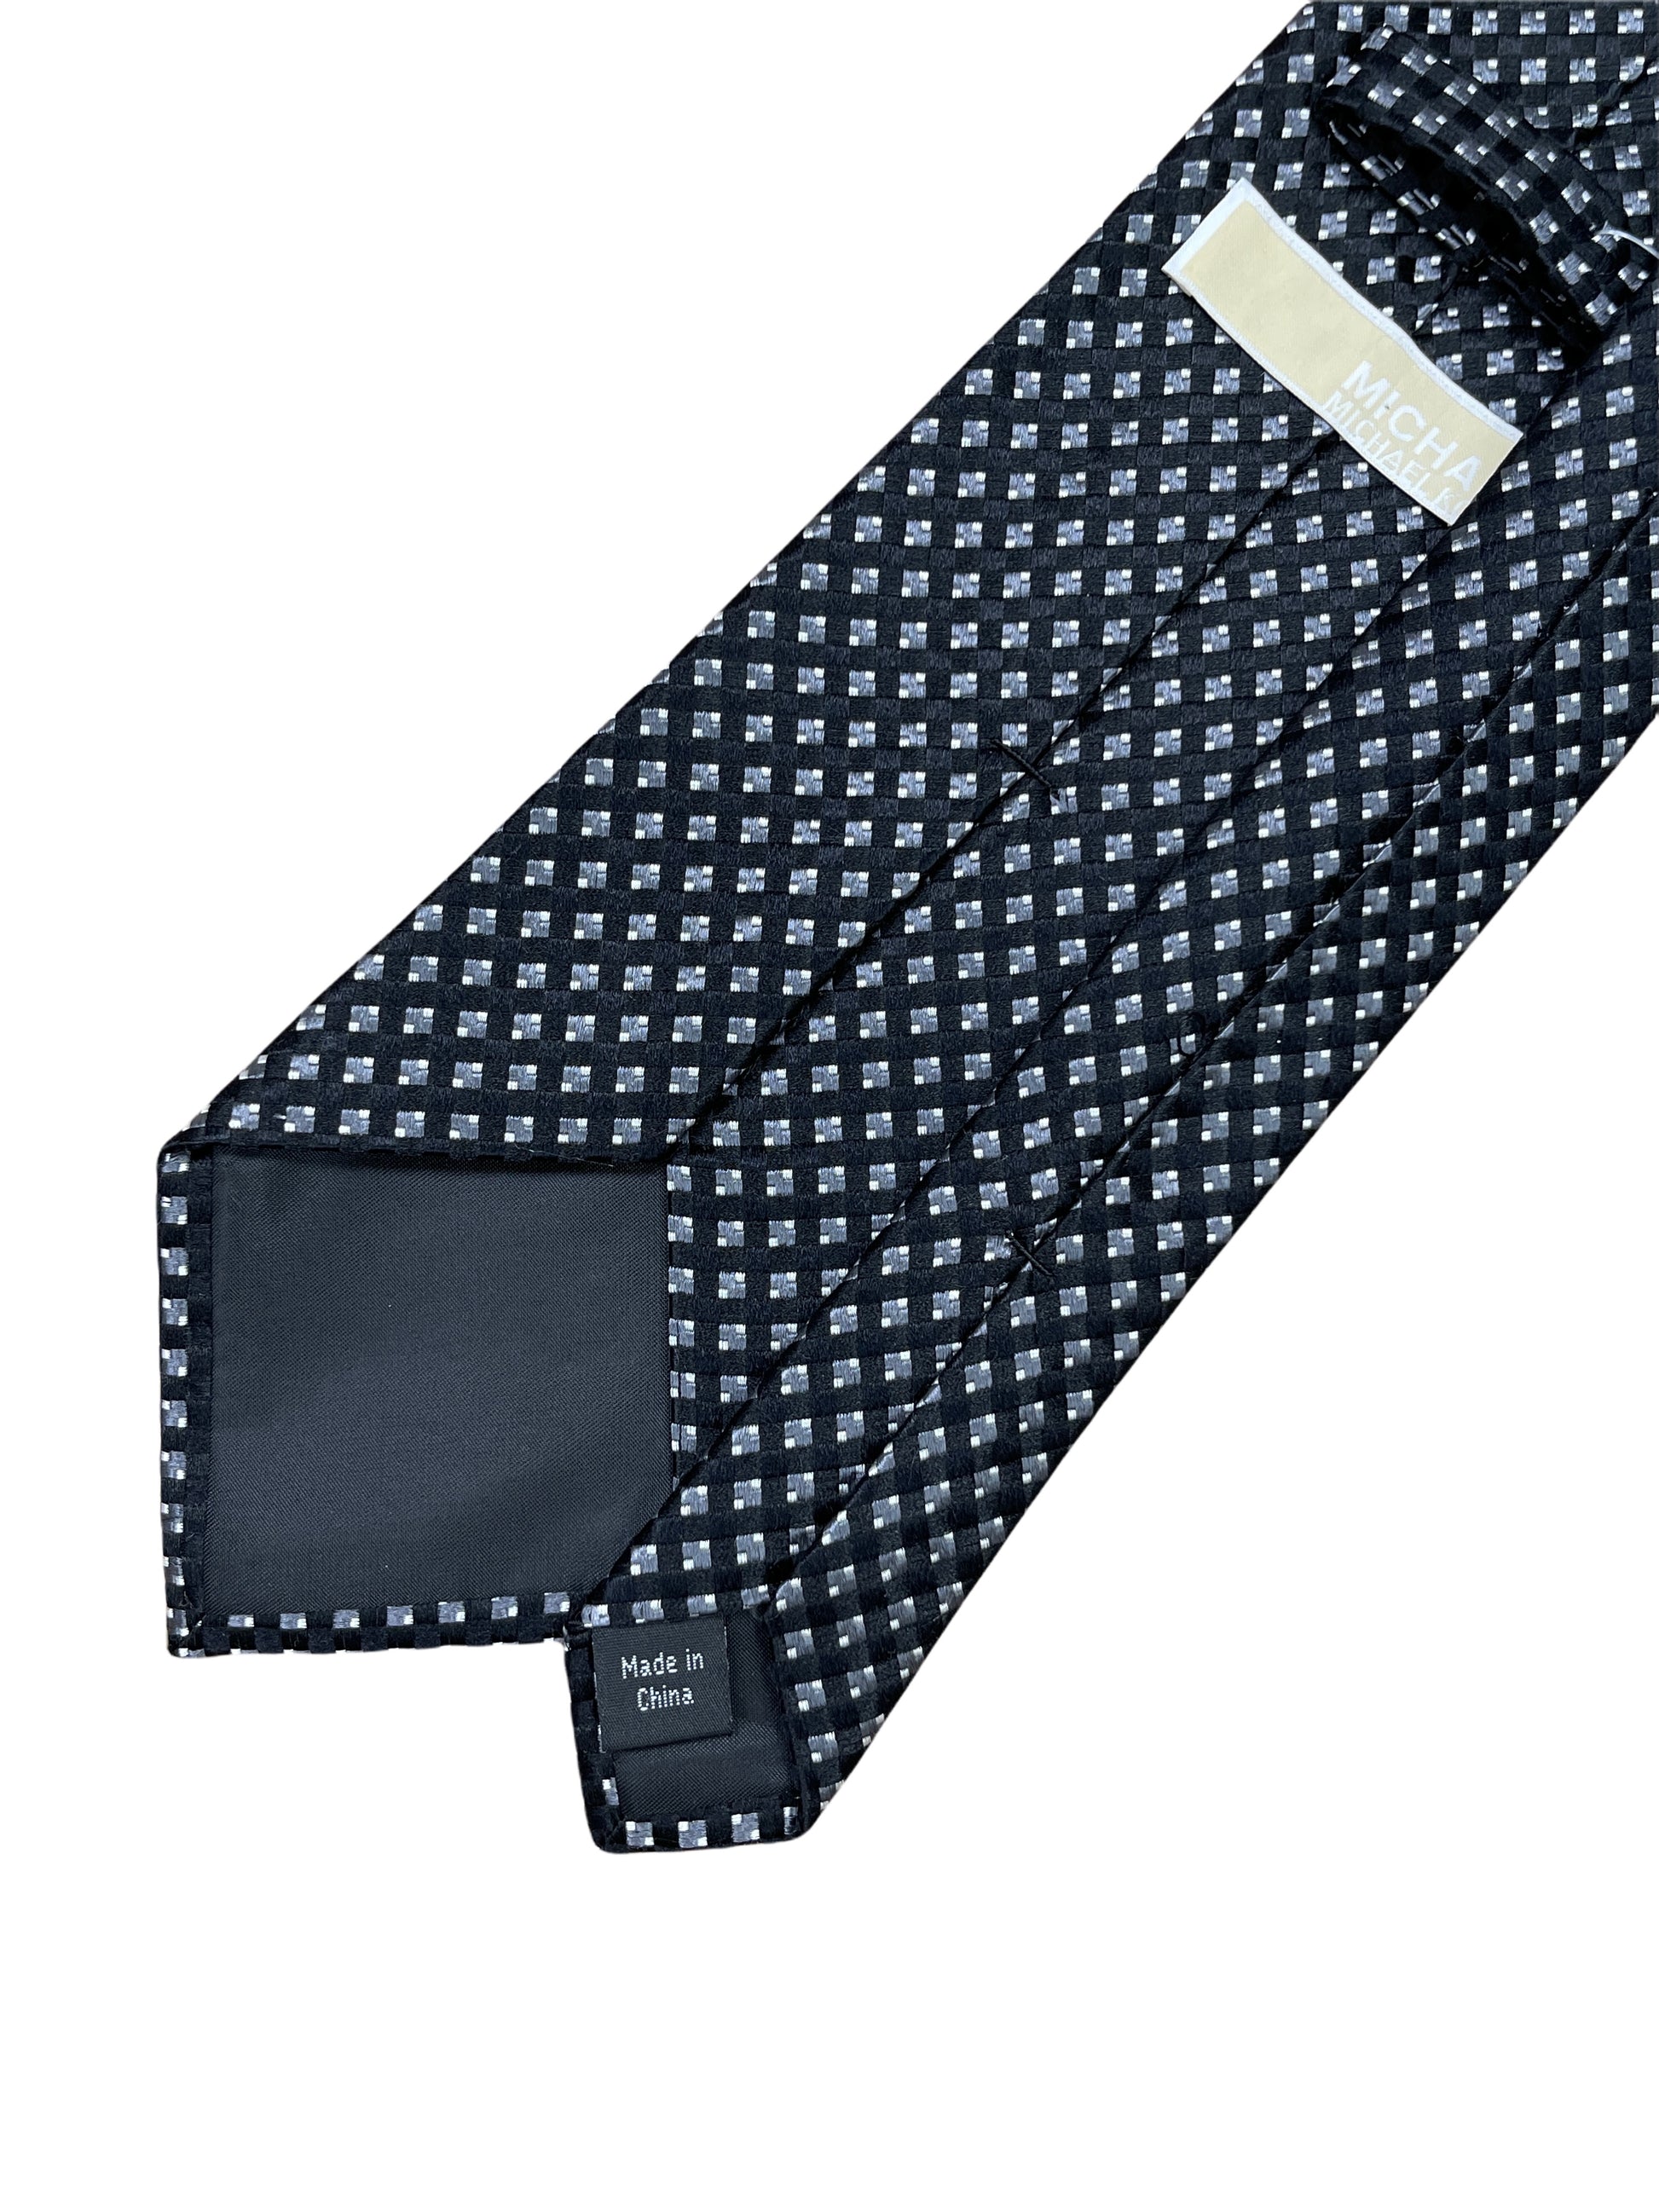 Michael Kors MK black silk tie